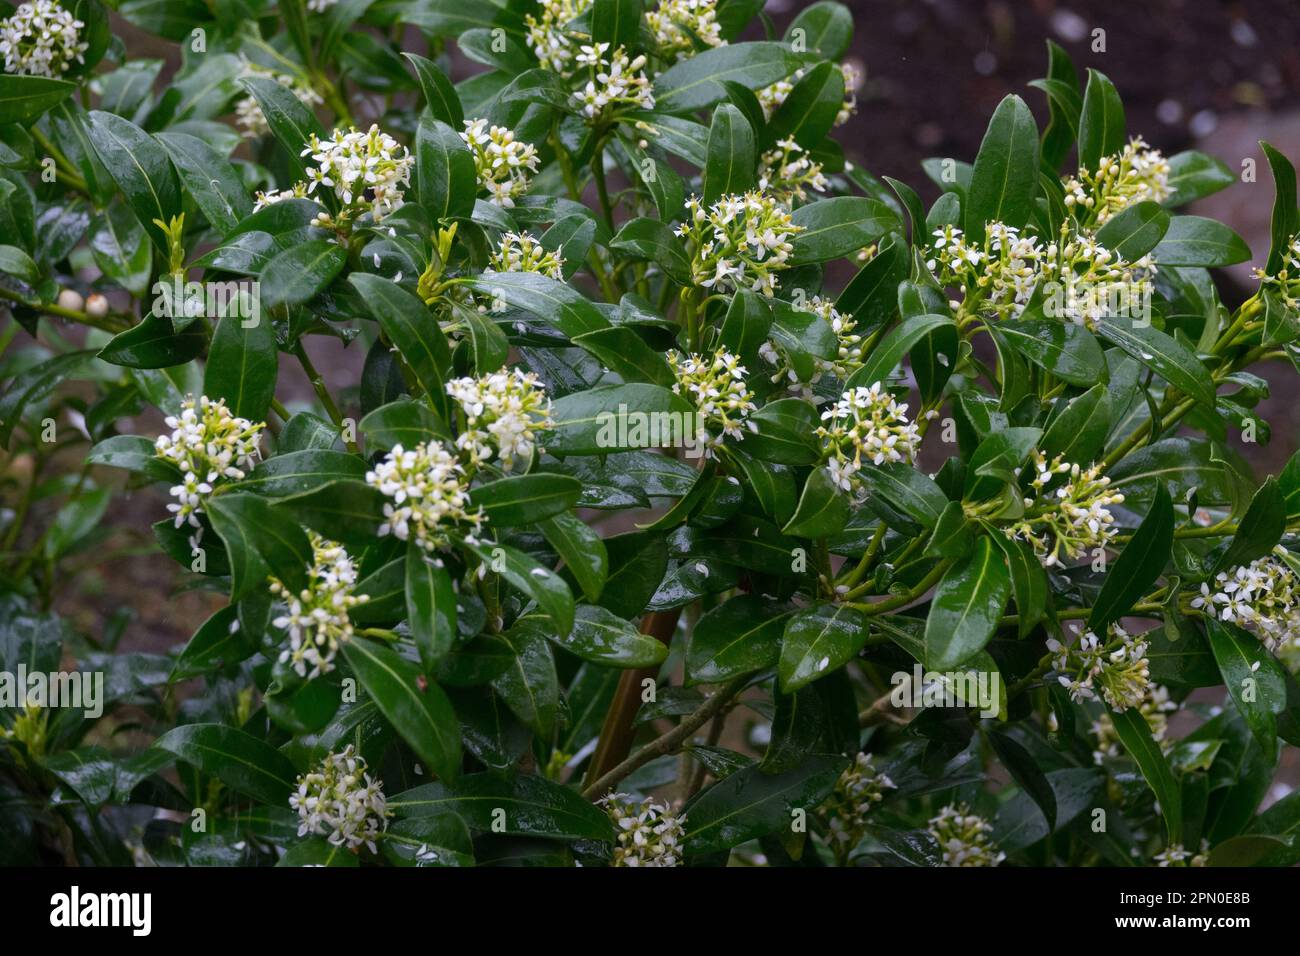 Skimmia japonica Kew White, Shrub, Japanese Skimmia, Garden, Plant Stock Photo